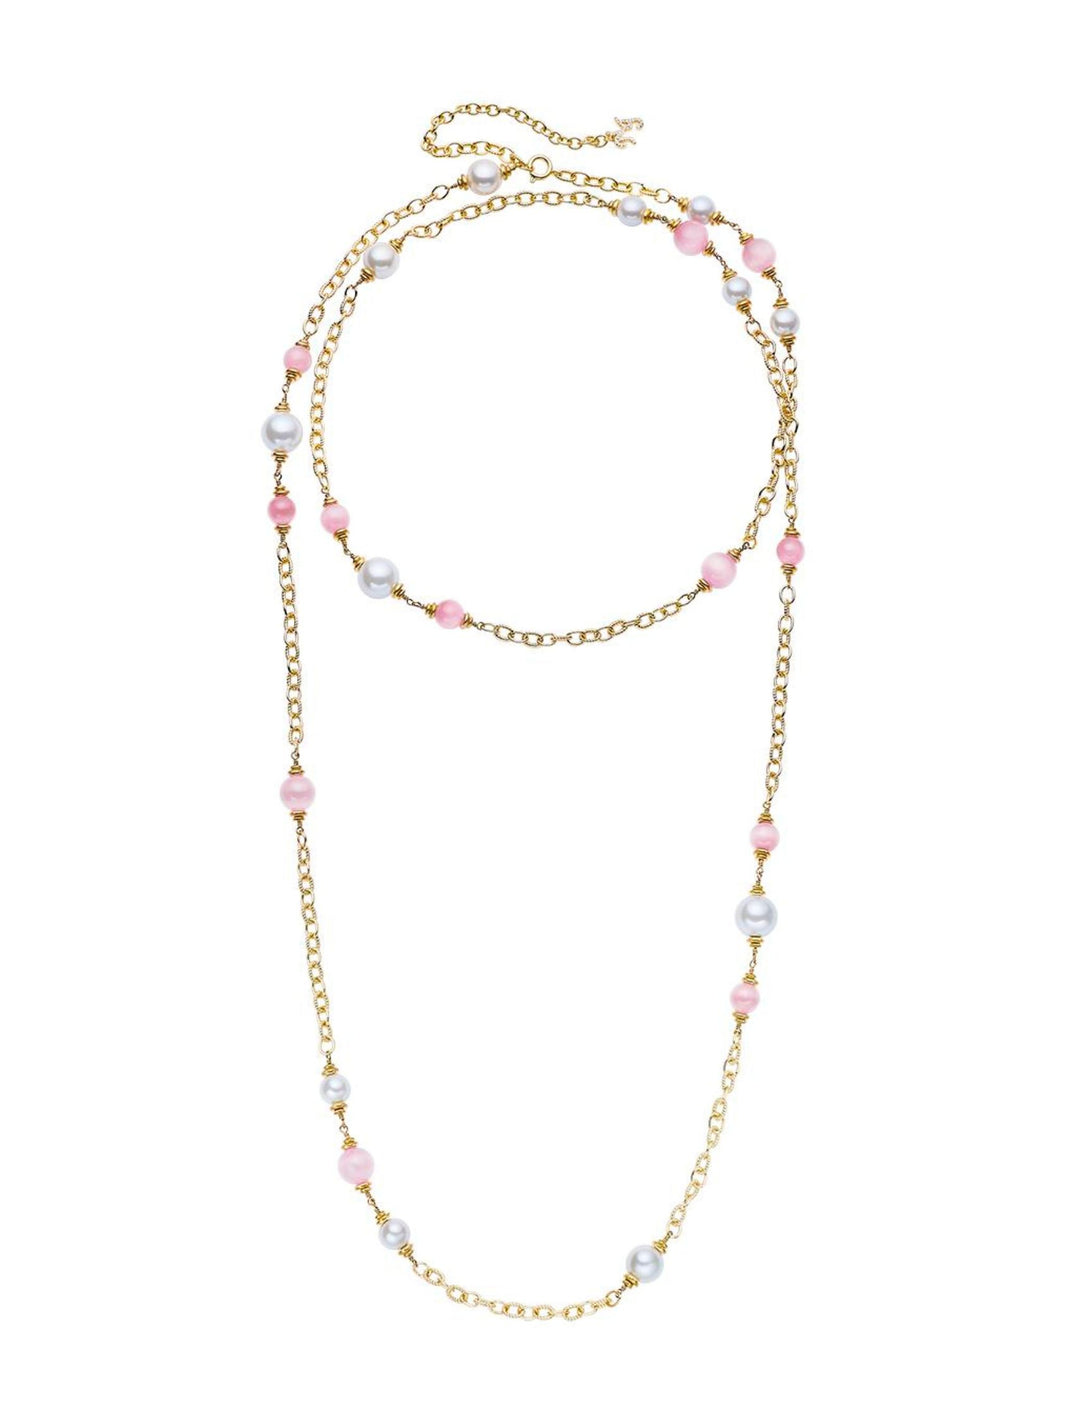 Shop Designer Necklaces & Choker Necklaces for Women | Nana Jacqueline